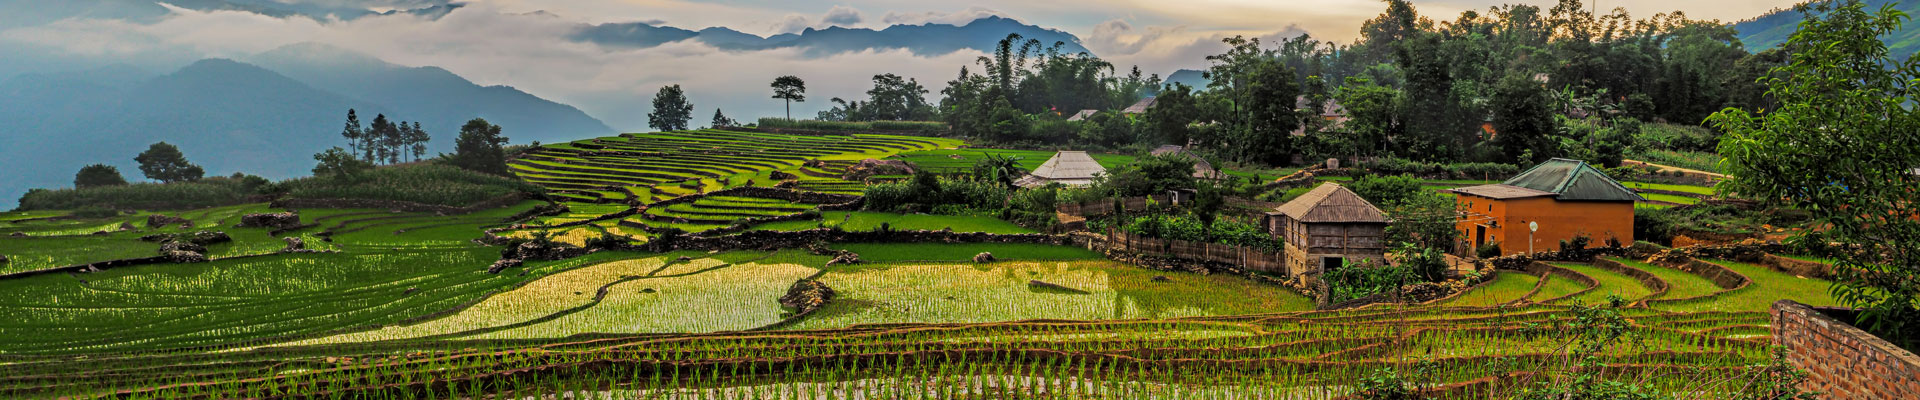 Paddy fields in Vietnam